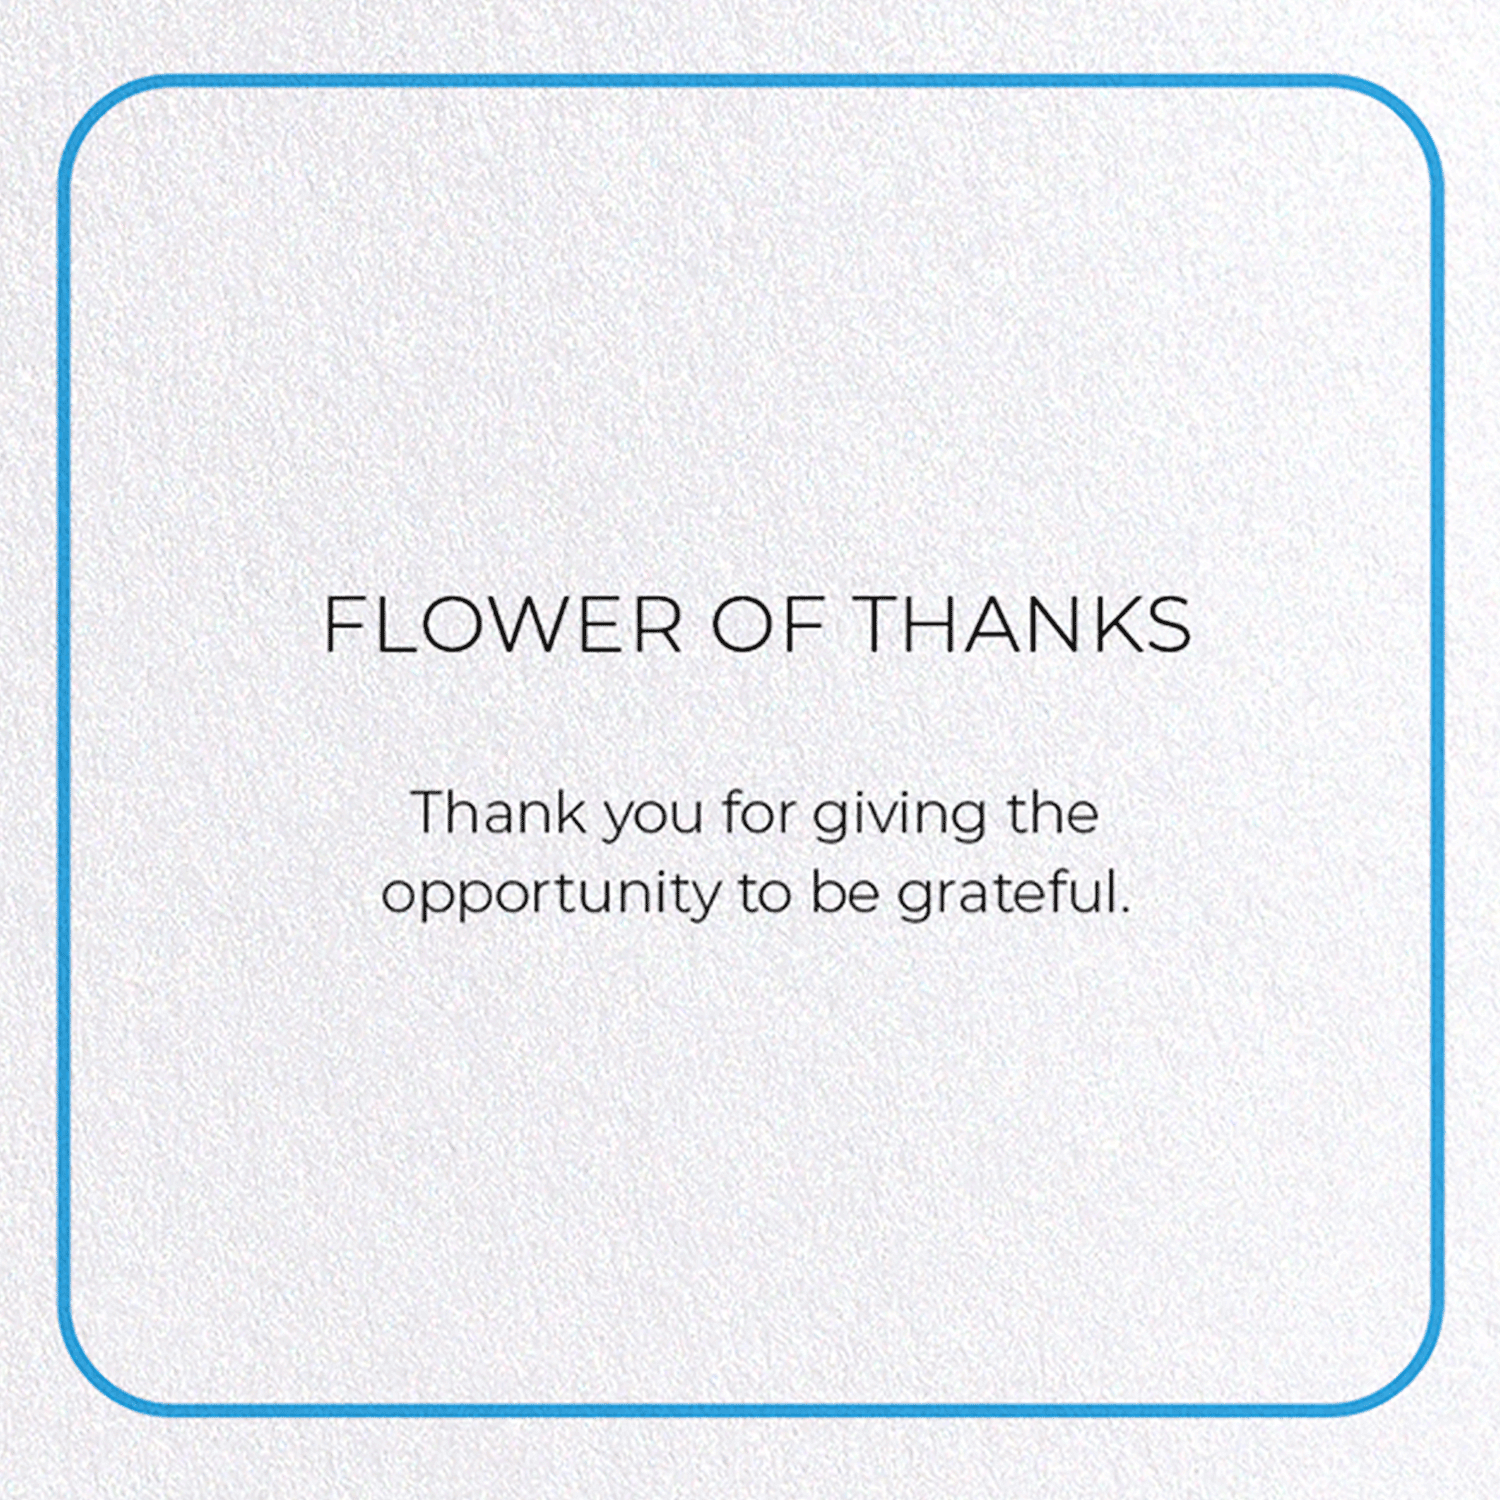 FLOWER OF THANKS